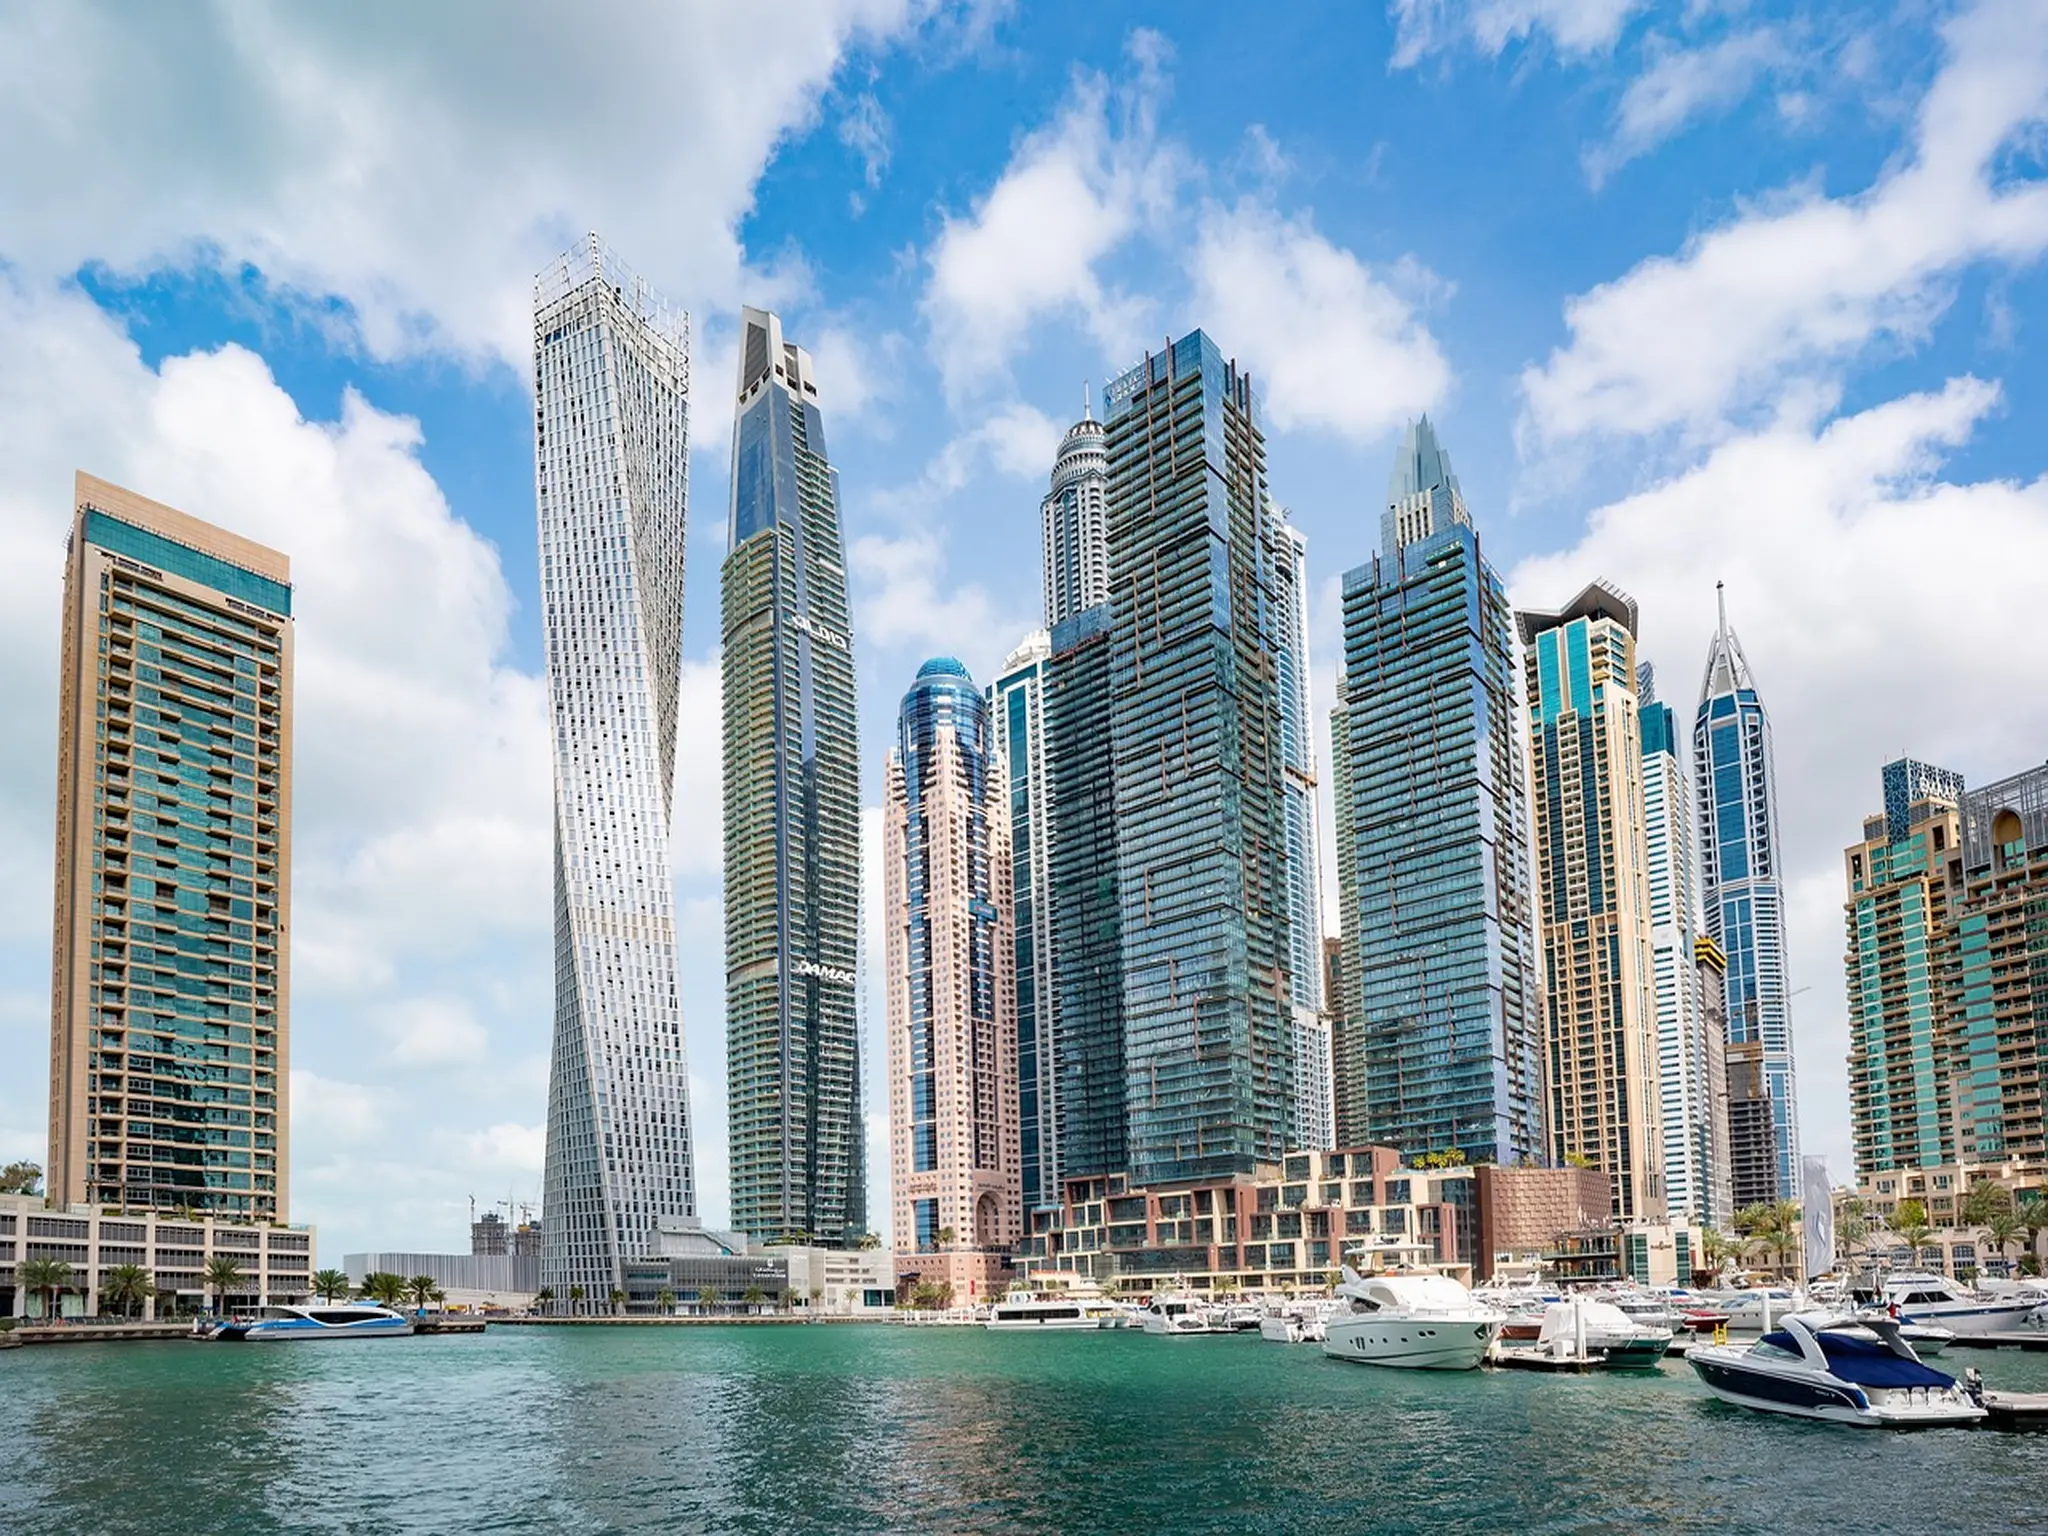 دبي تشهد قفزة قوية في إعداد البيانات الجمركية لتصل إلى 1.13 مليون بيان جمركي